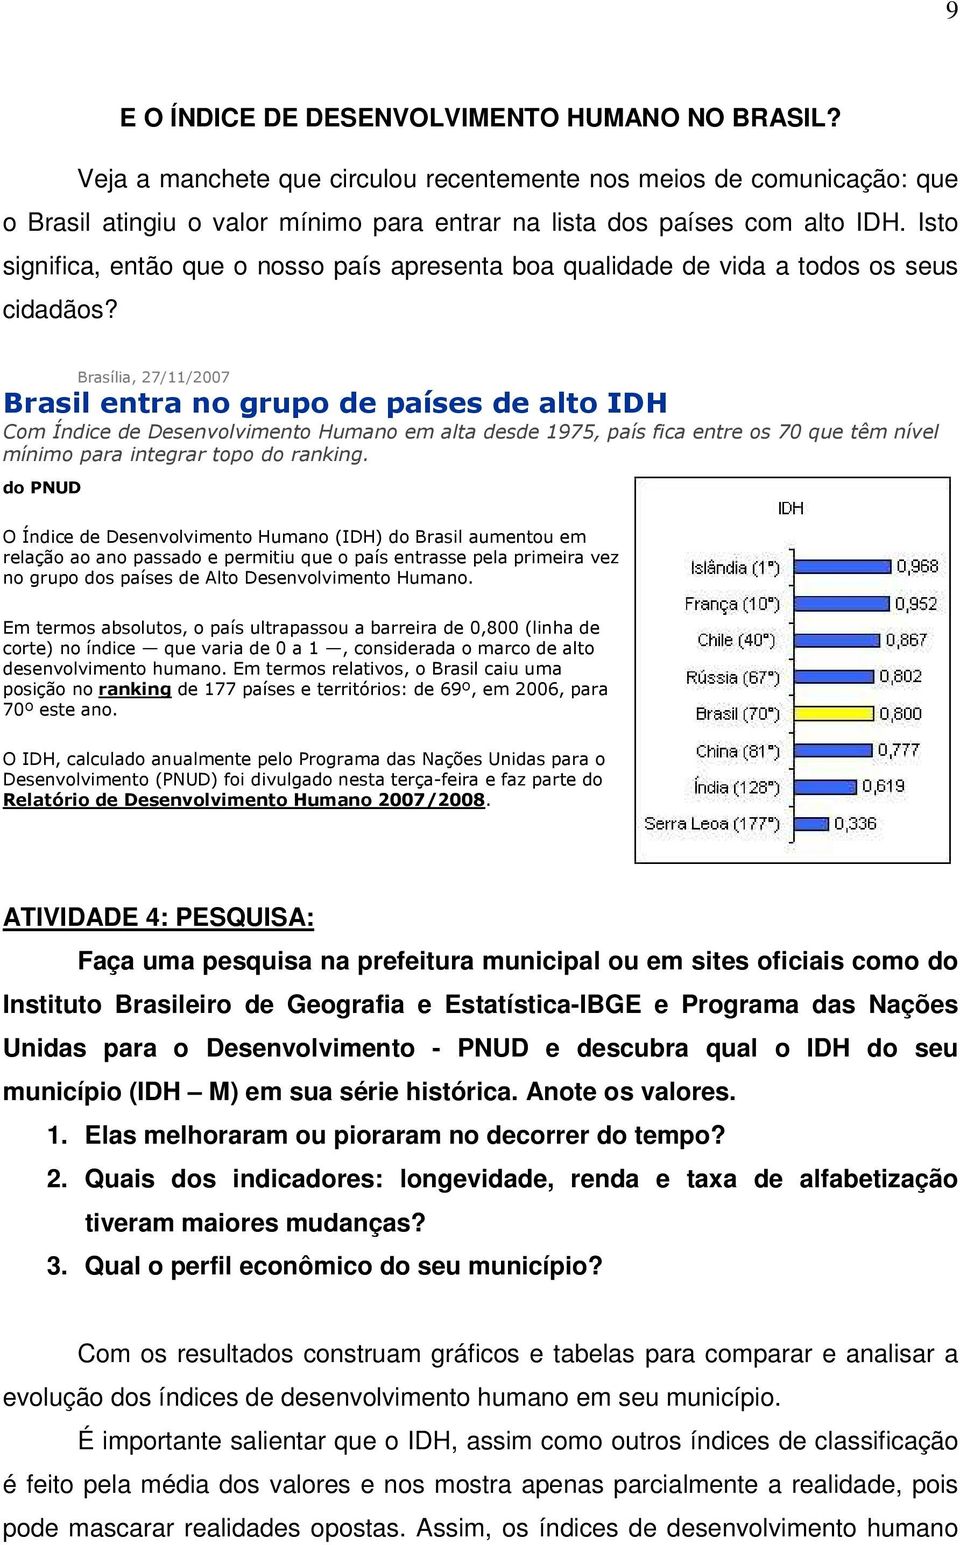 Brasília, 27/11/2007 Brasil entra no grupo de países de alto IDH Com Índice de Desenvolvimento Humano em alta desde 1975, país fica entre os 70 que têm nível mínimo para integrar topo do ranking.